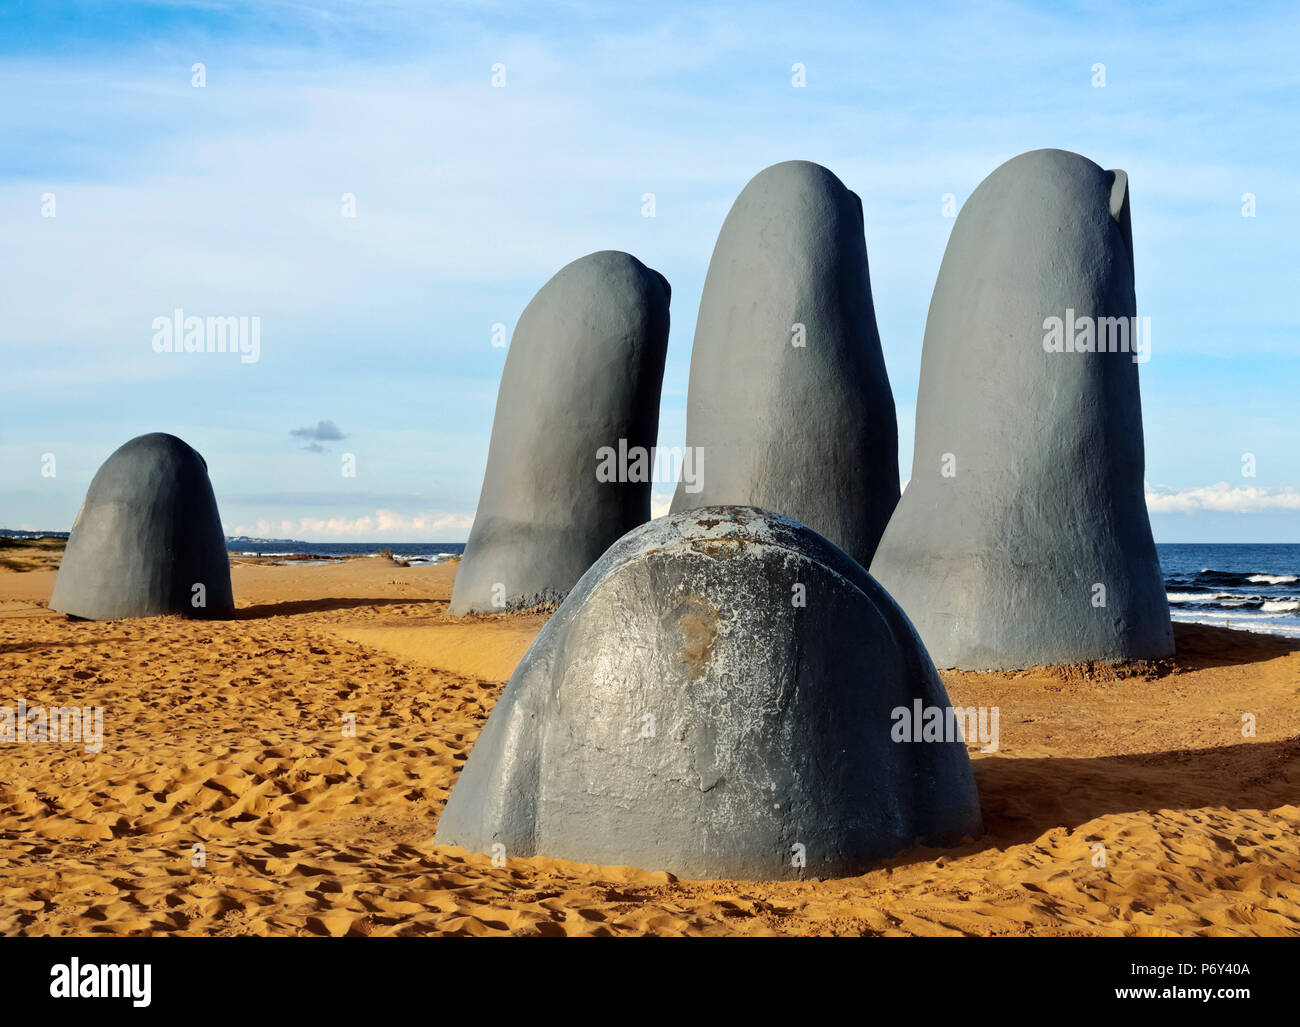 Uruguay, Maldonado Department, Punta del Este, Playa Brava, La Mano(The Hand), a sculpture by Chilean artist Mario Irarrazabal. Stock Photo